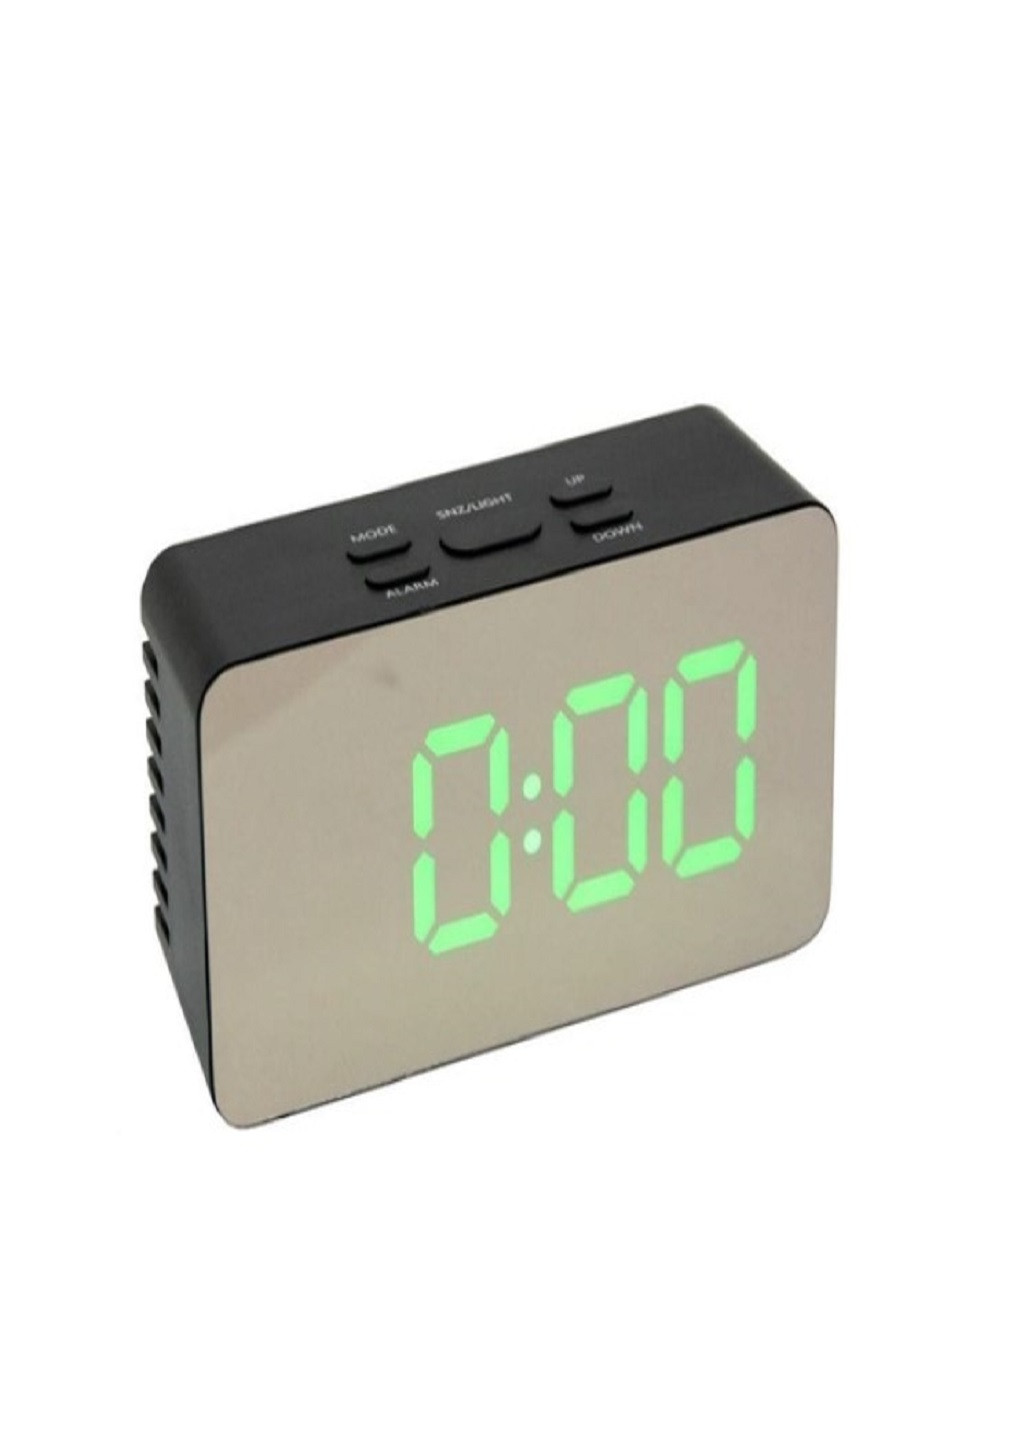 Настільний електронний годинник з підсвіткою і живленням від мережі 220В або батарейок DS-3658 Чорний корпус Зелена підсвітка VTech (263360253)